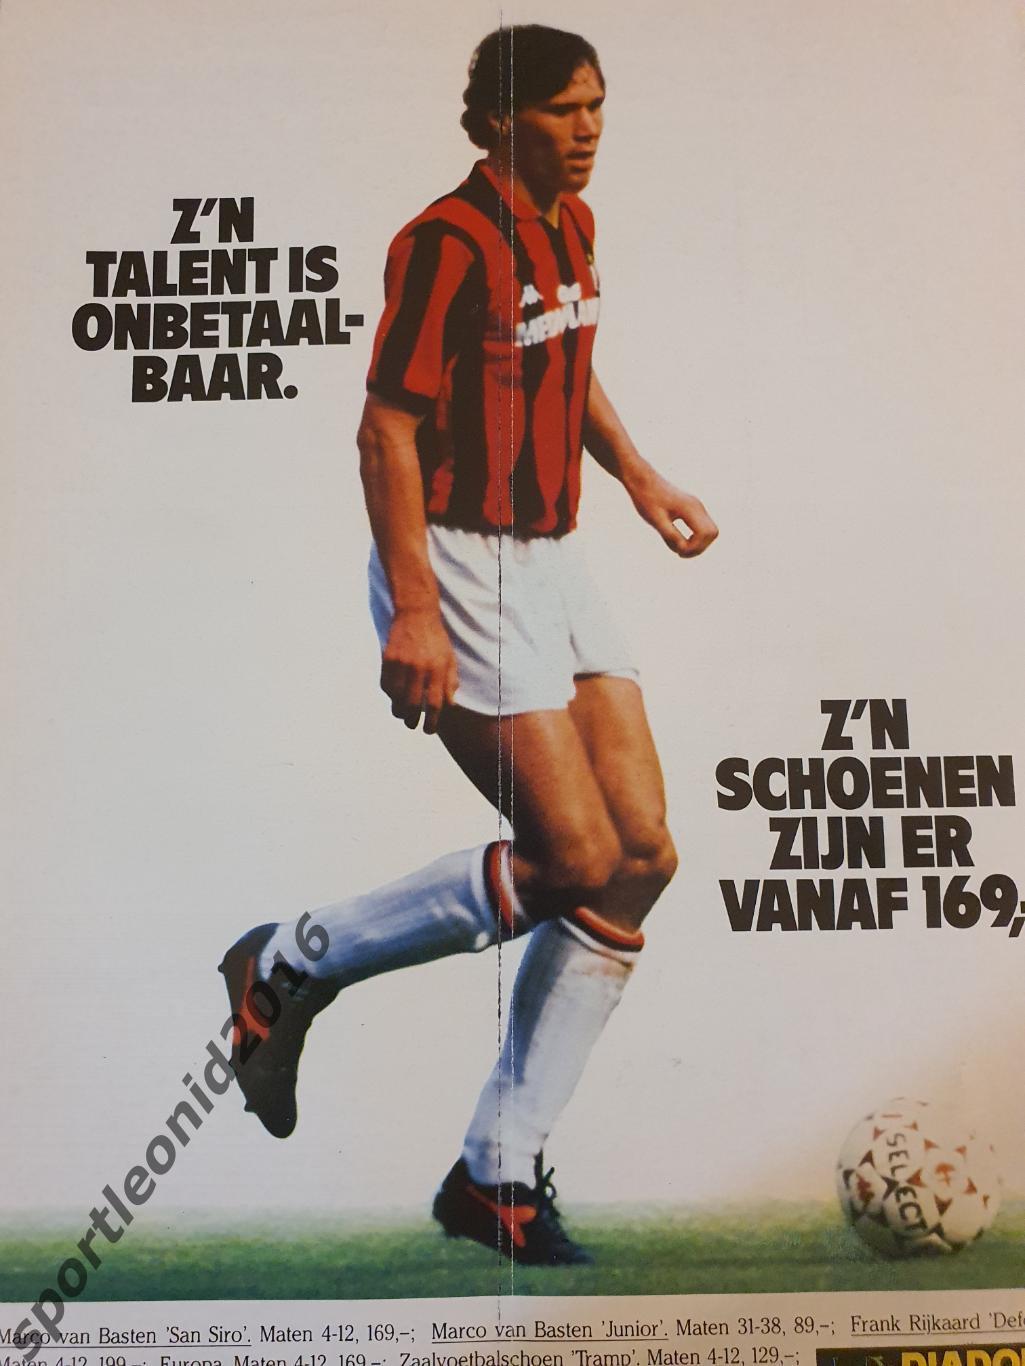 Voetbal International 1990 и 1989 годов выпуска.12 журналов.4 4